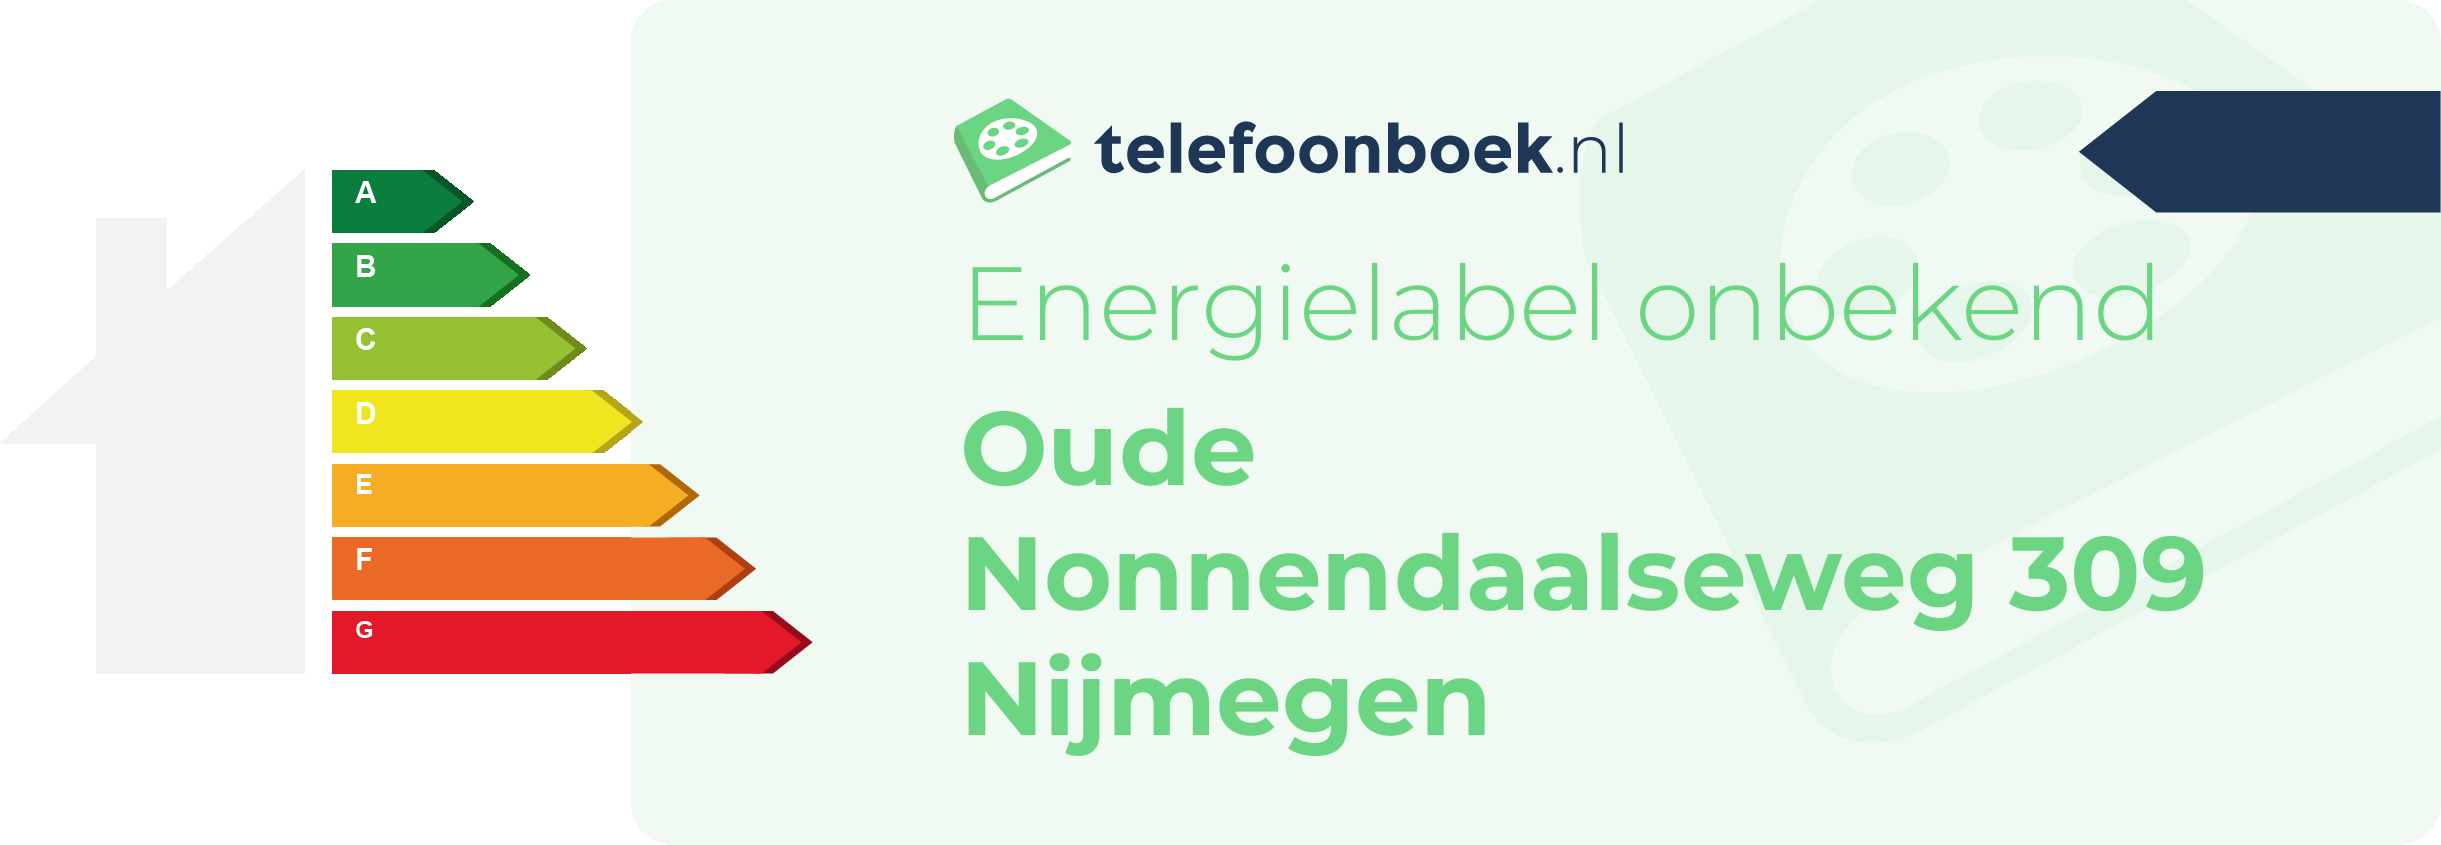 Energielabel Oude Nonnendaalseweg 309 Nijmegen